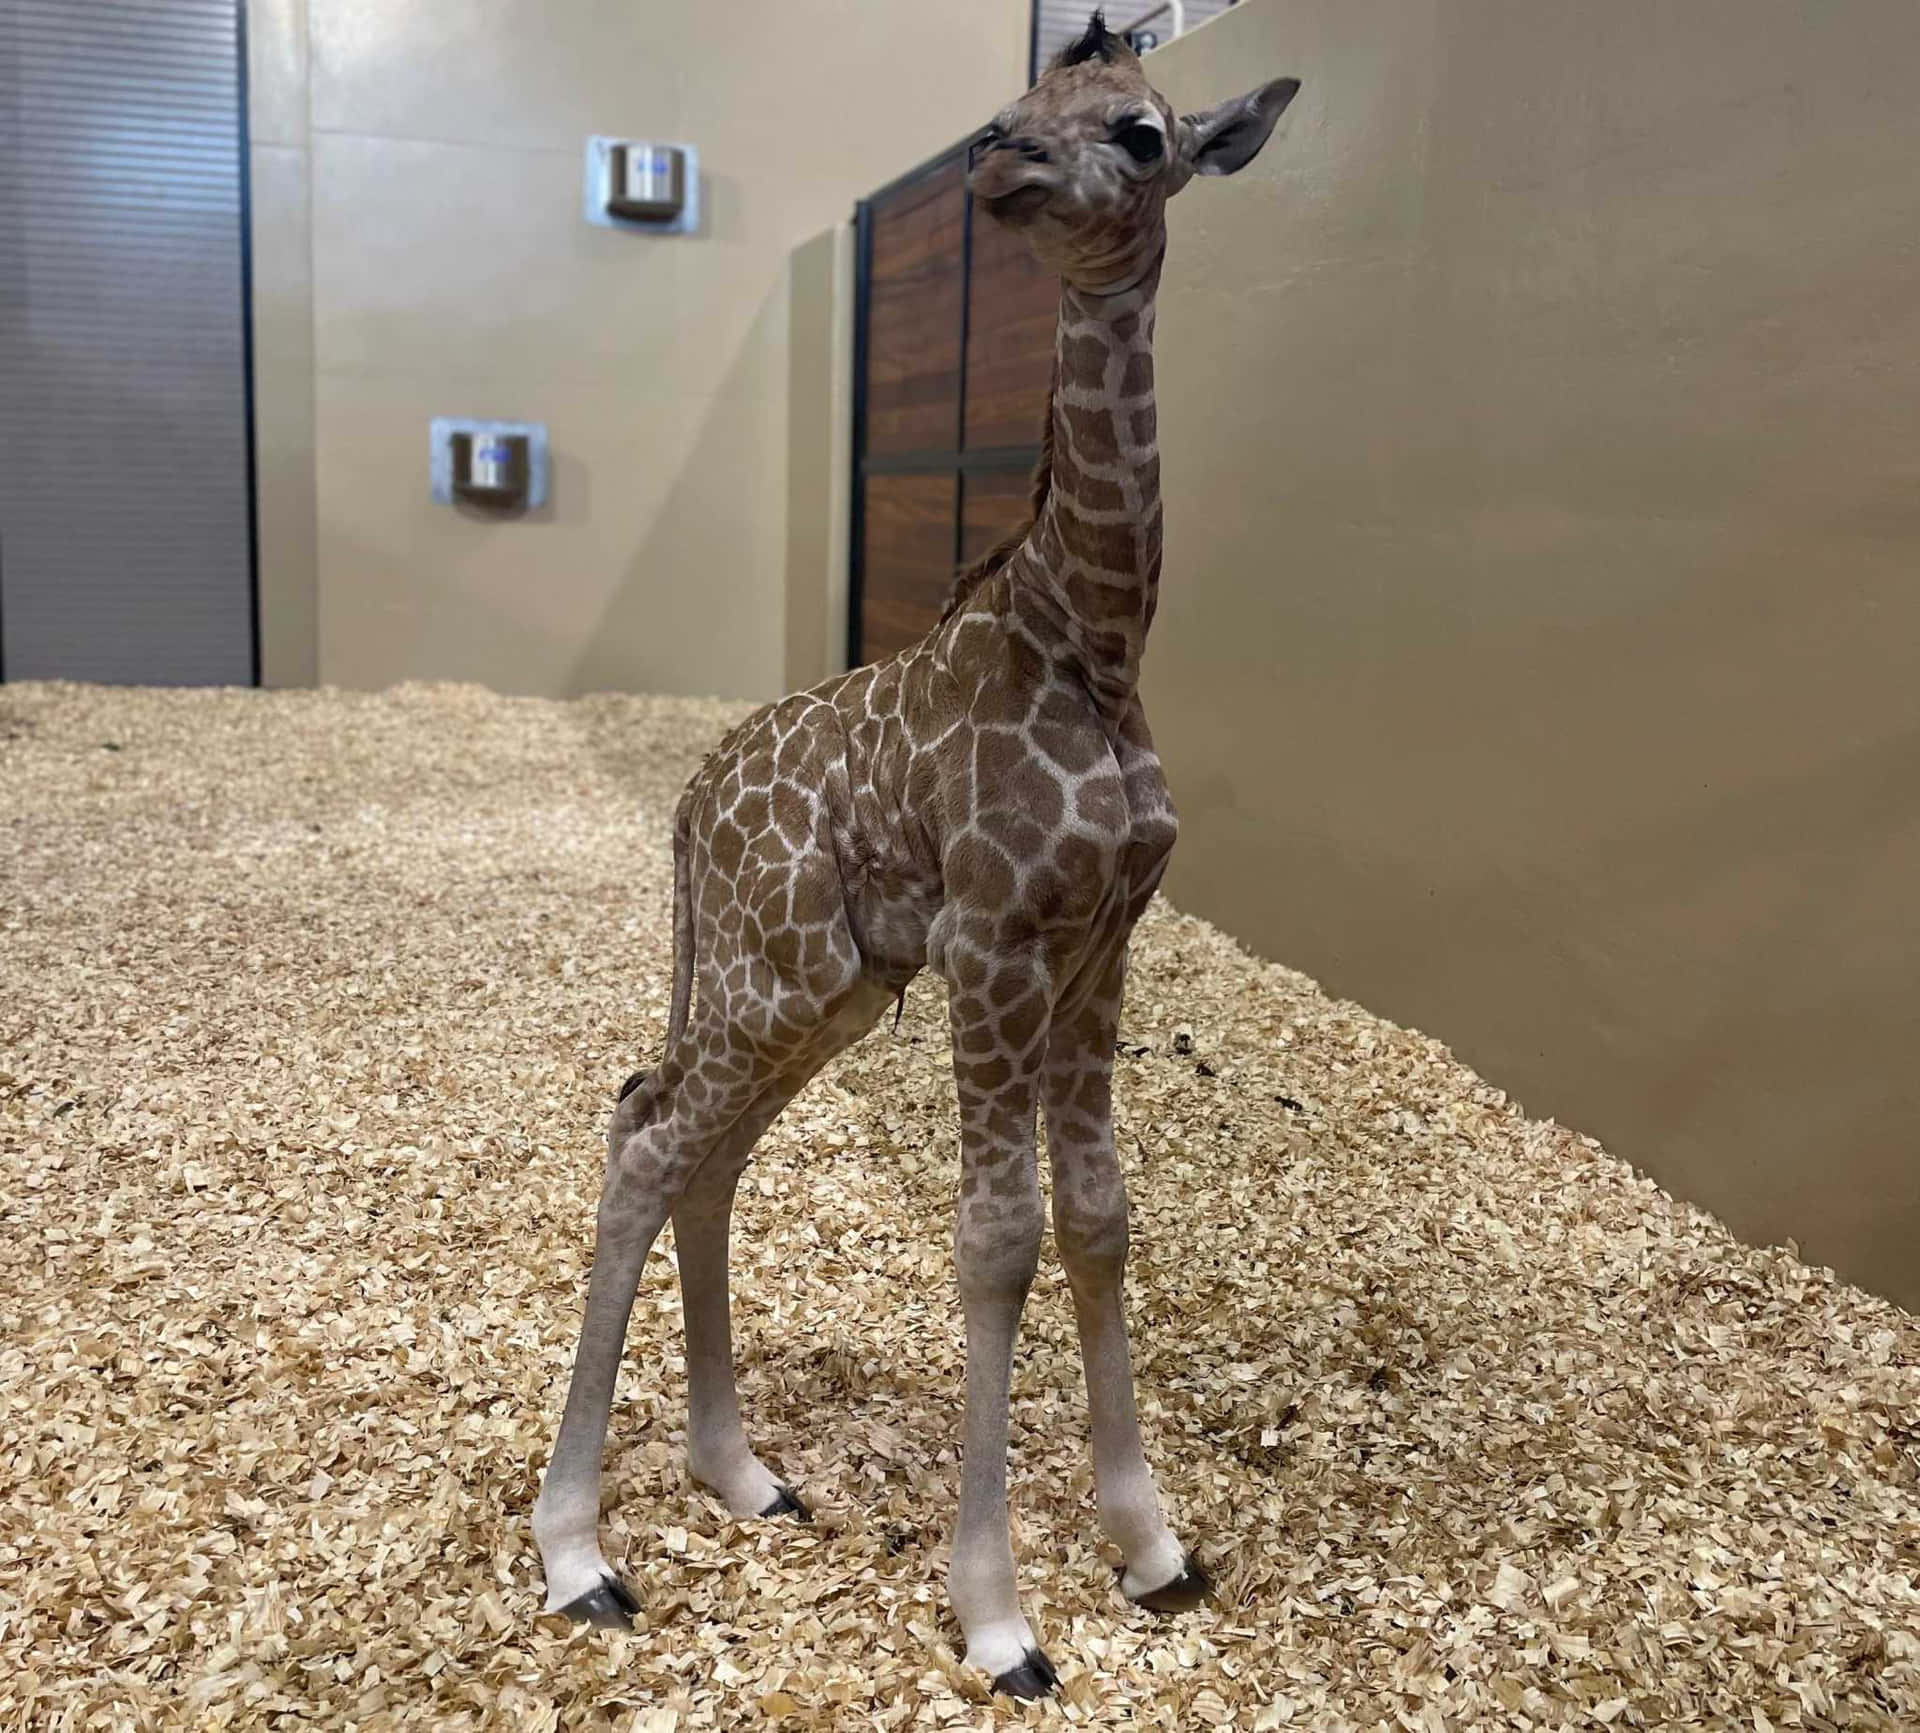 So Cute! An adorable Baby Giraffe